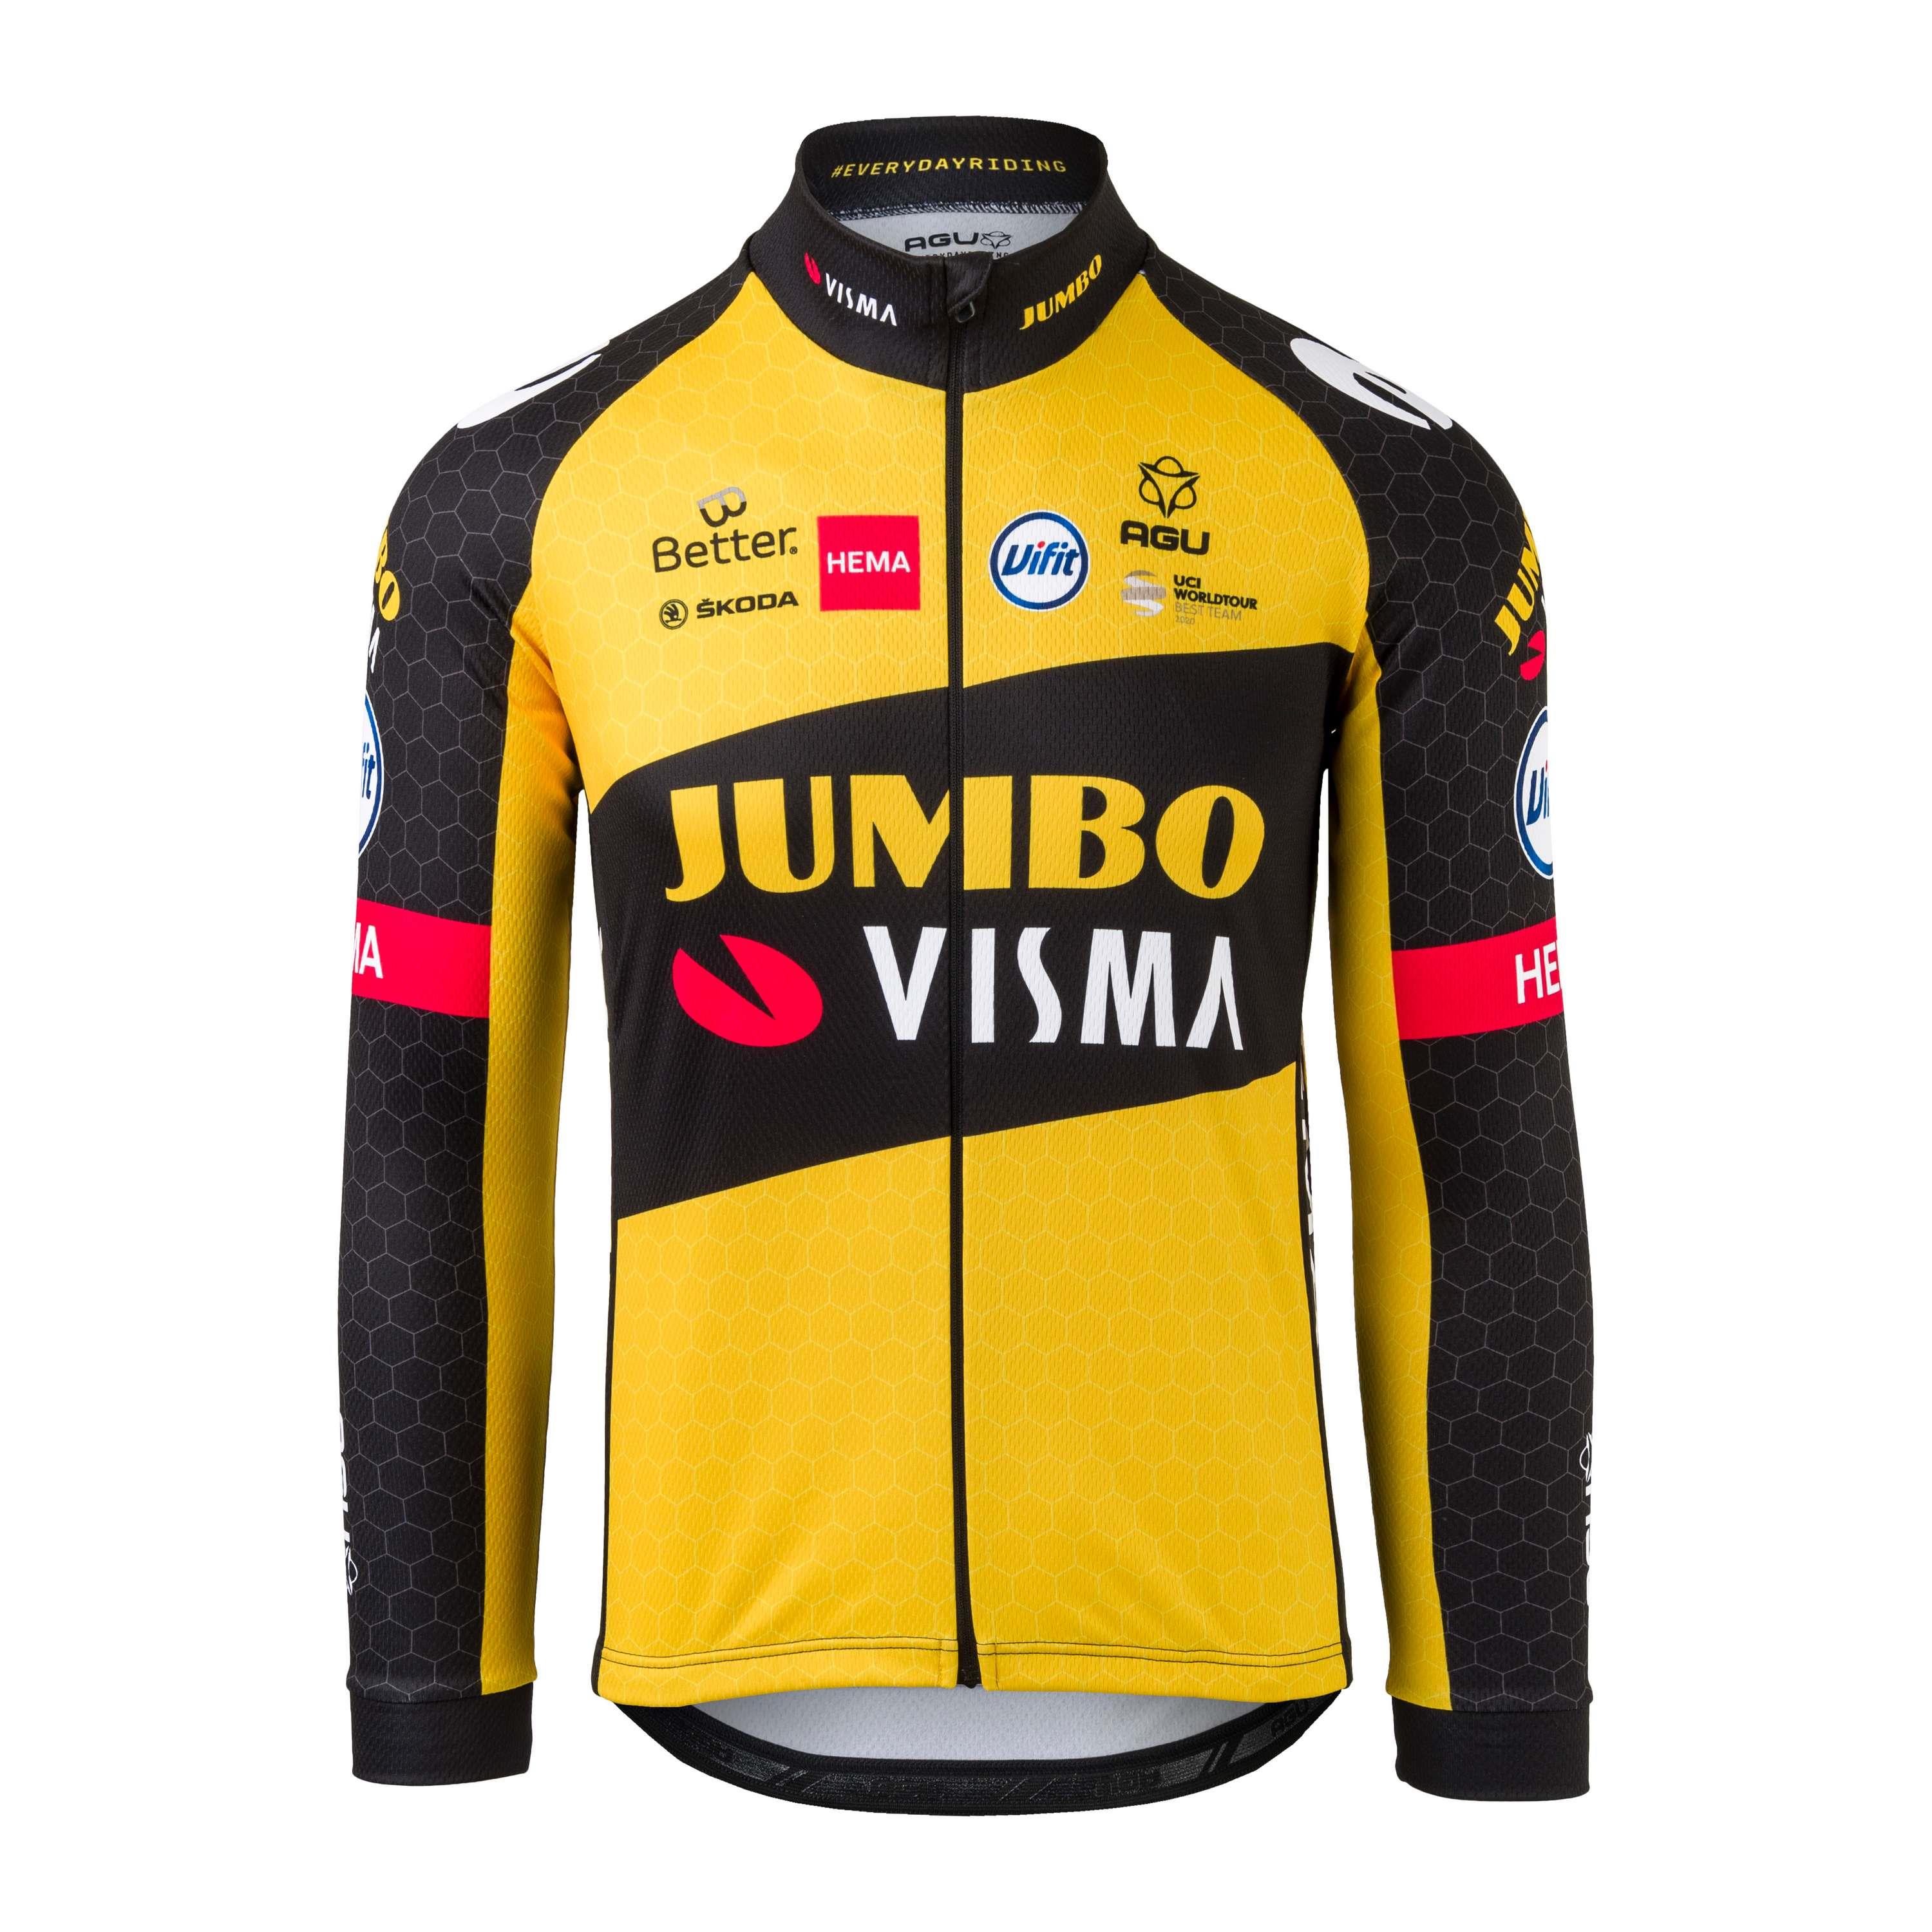 Agu Jumbo-Visma fietsshirt heren geel